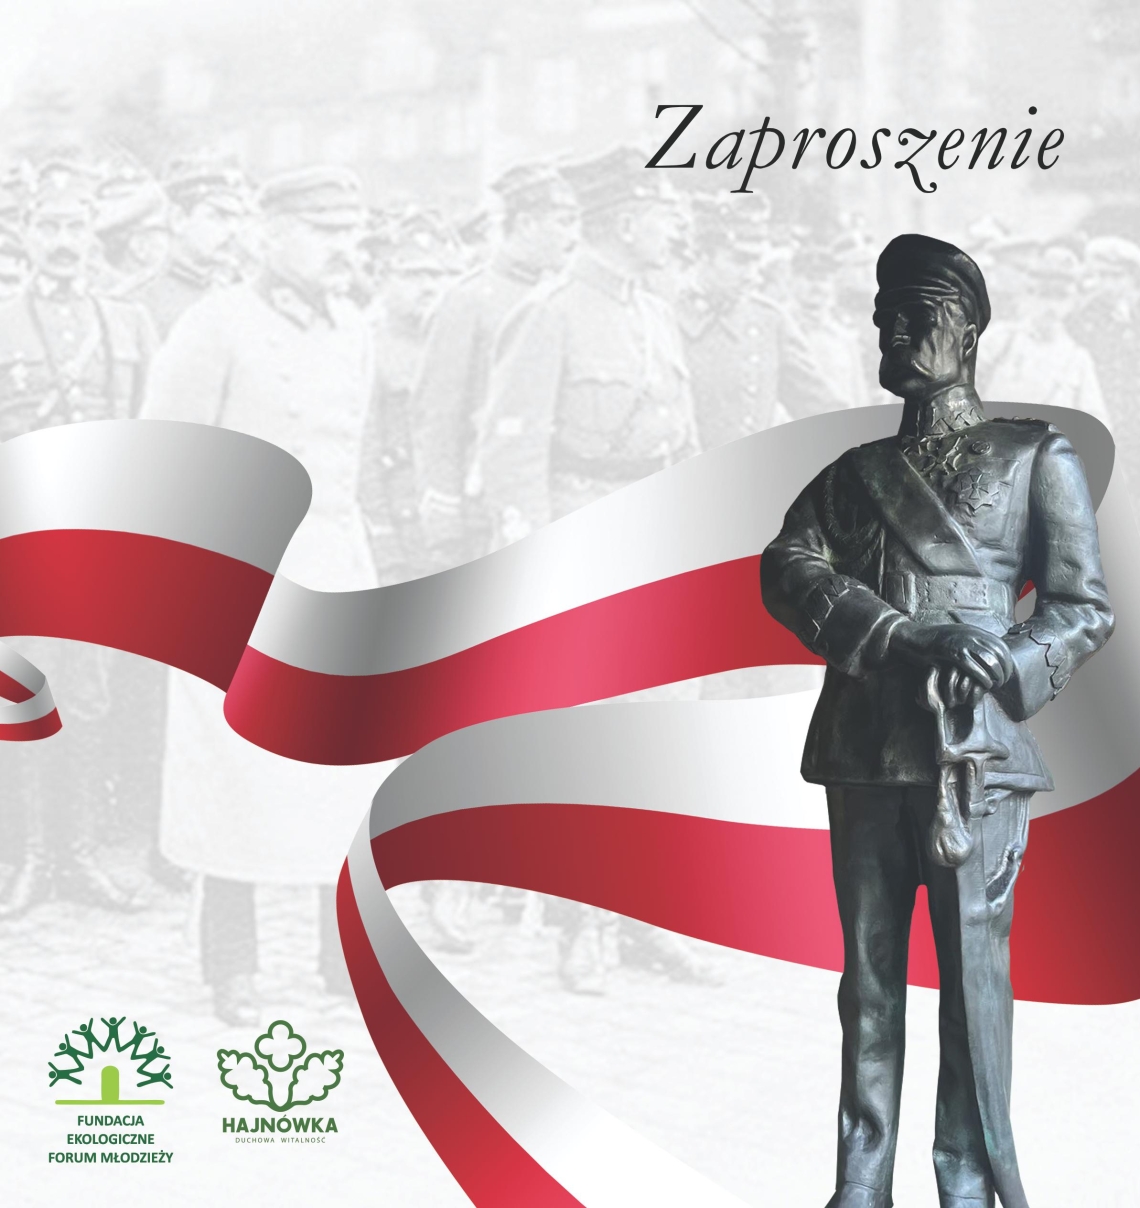 na szarym tle przez środek przebiega biało-czerwona wstęga, po prawej stronie sylwetka Józefa Piłsudskiego w szaro-ciemnym kolorze; u dołu w leweym dolnym rogu logotypy fundacji oraz miasta Hajnówka 